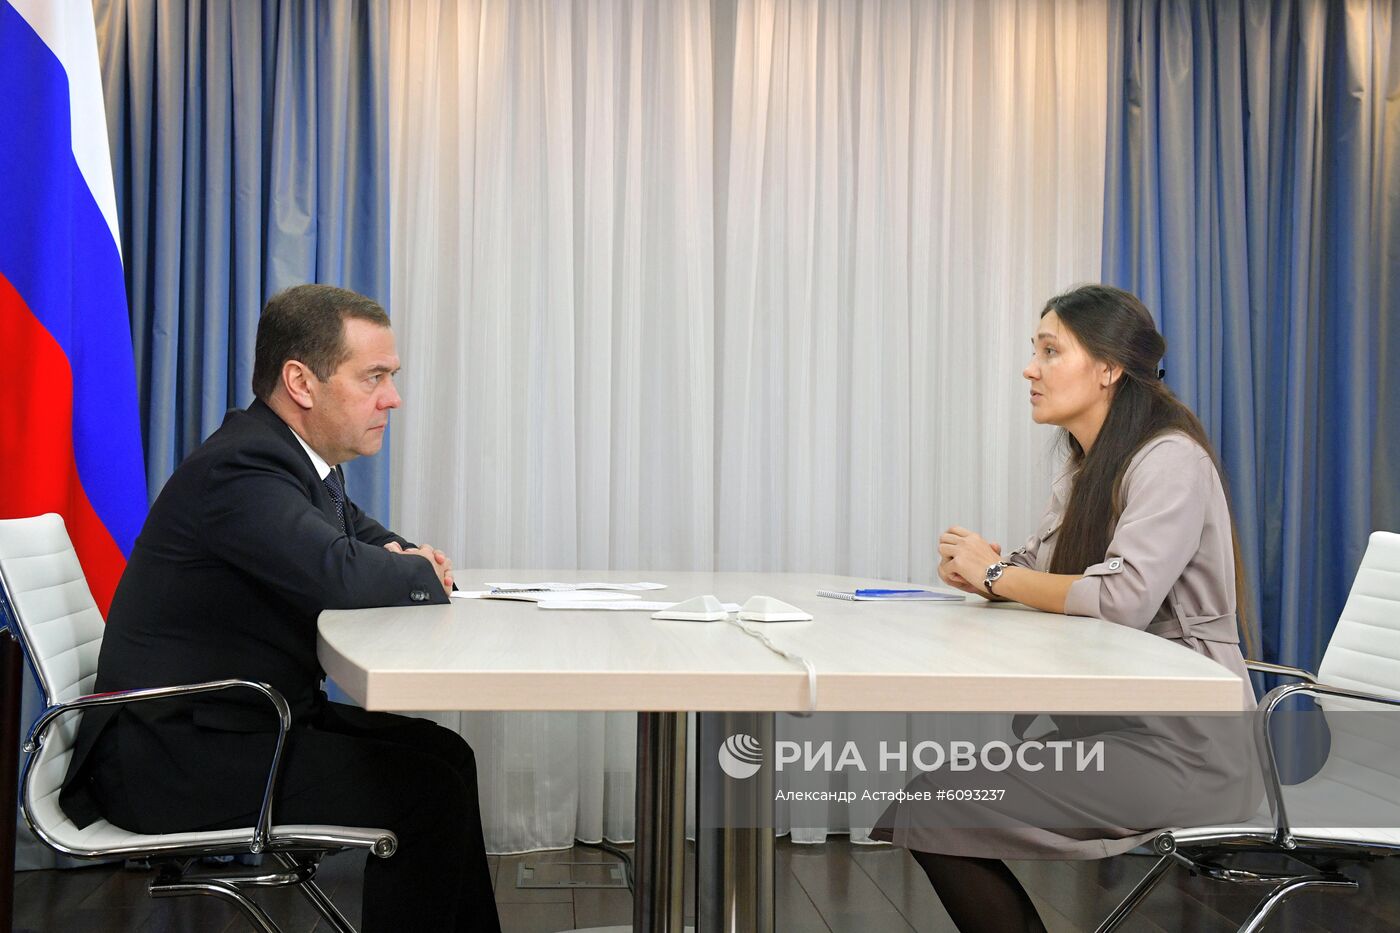 Премьер-министр РФ, председатель партии "Единая Россия" Д. Медведев провел прием граждан в приемной партии ЕР в Москве